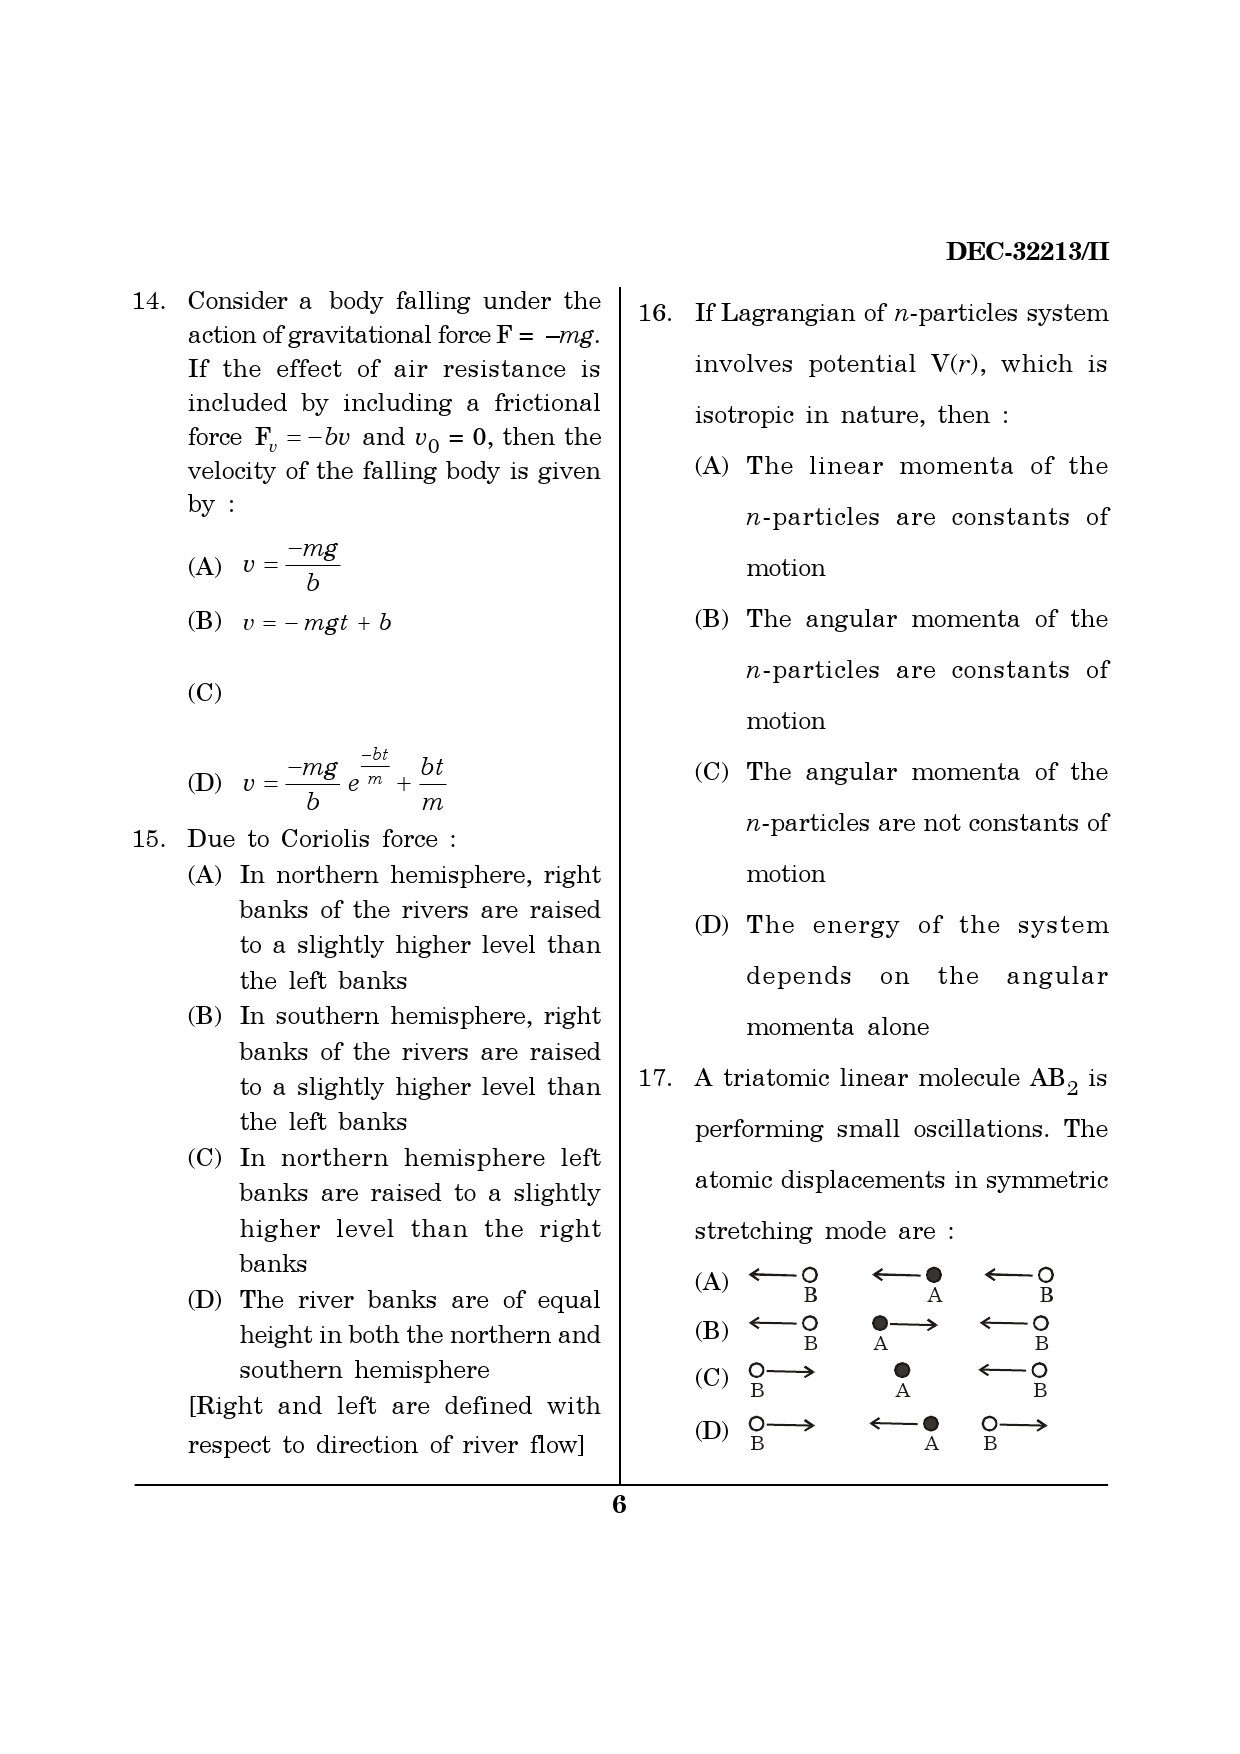 Maharashtra SET Physics Question Paper II December 2013 5